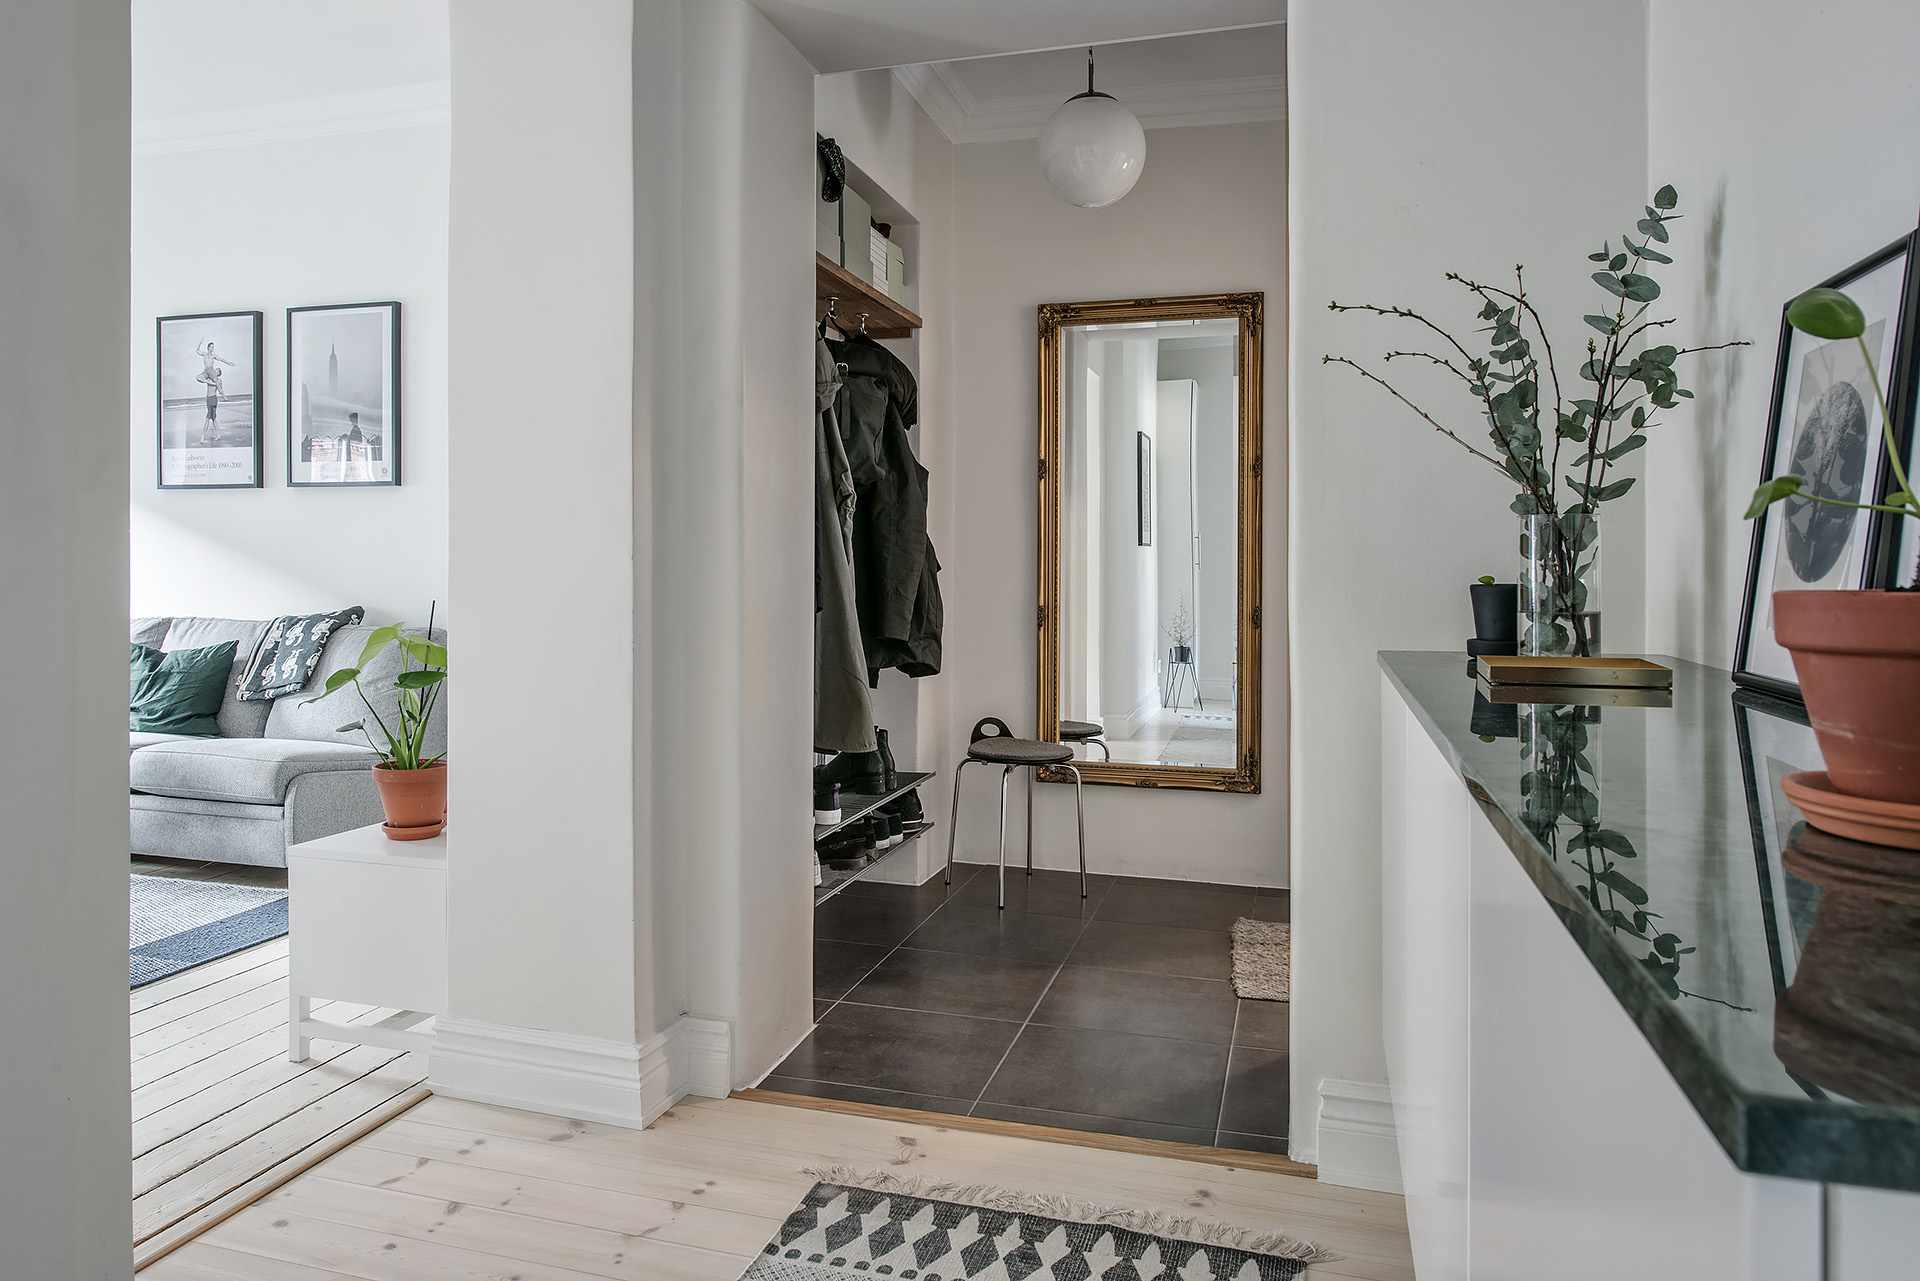 Ein Wohnungsflur - minimalistischer nordischer Stil